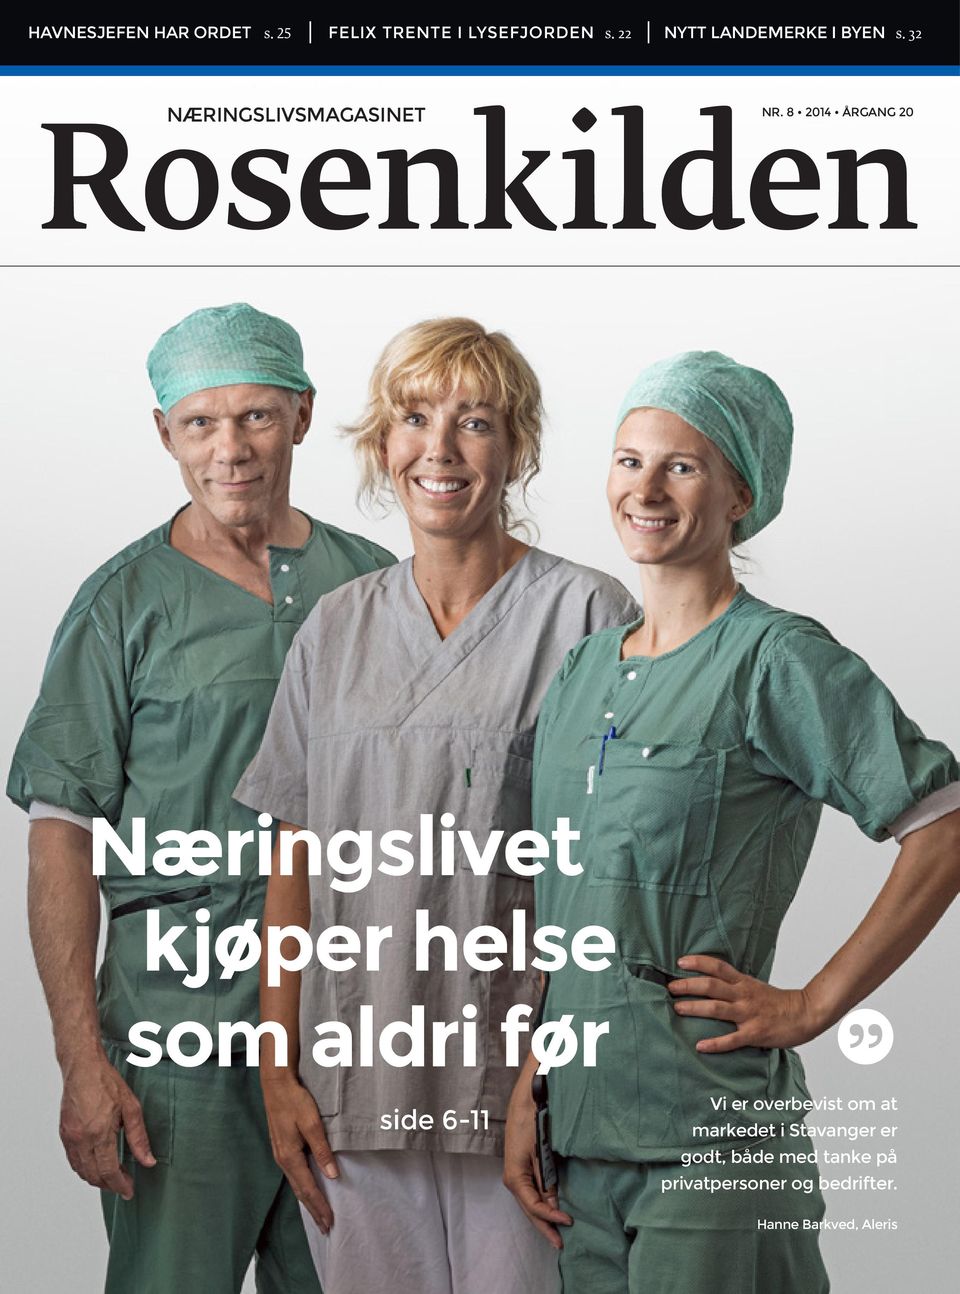 8 2014 ÅRGANG 20 Rosenkilden Næringslivet kjøper helse som aldri før side 6-11